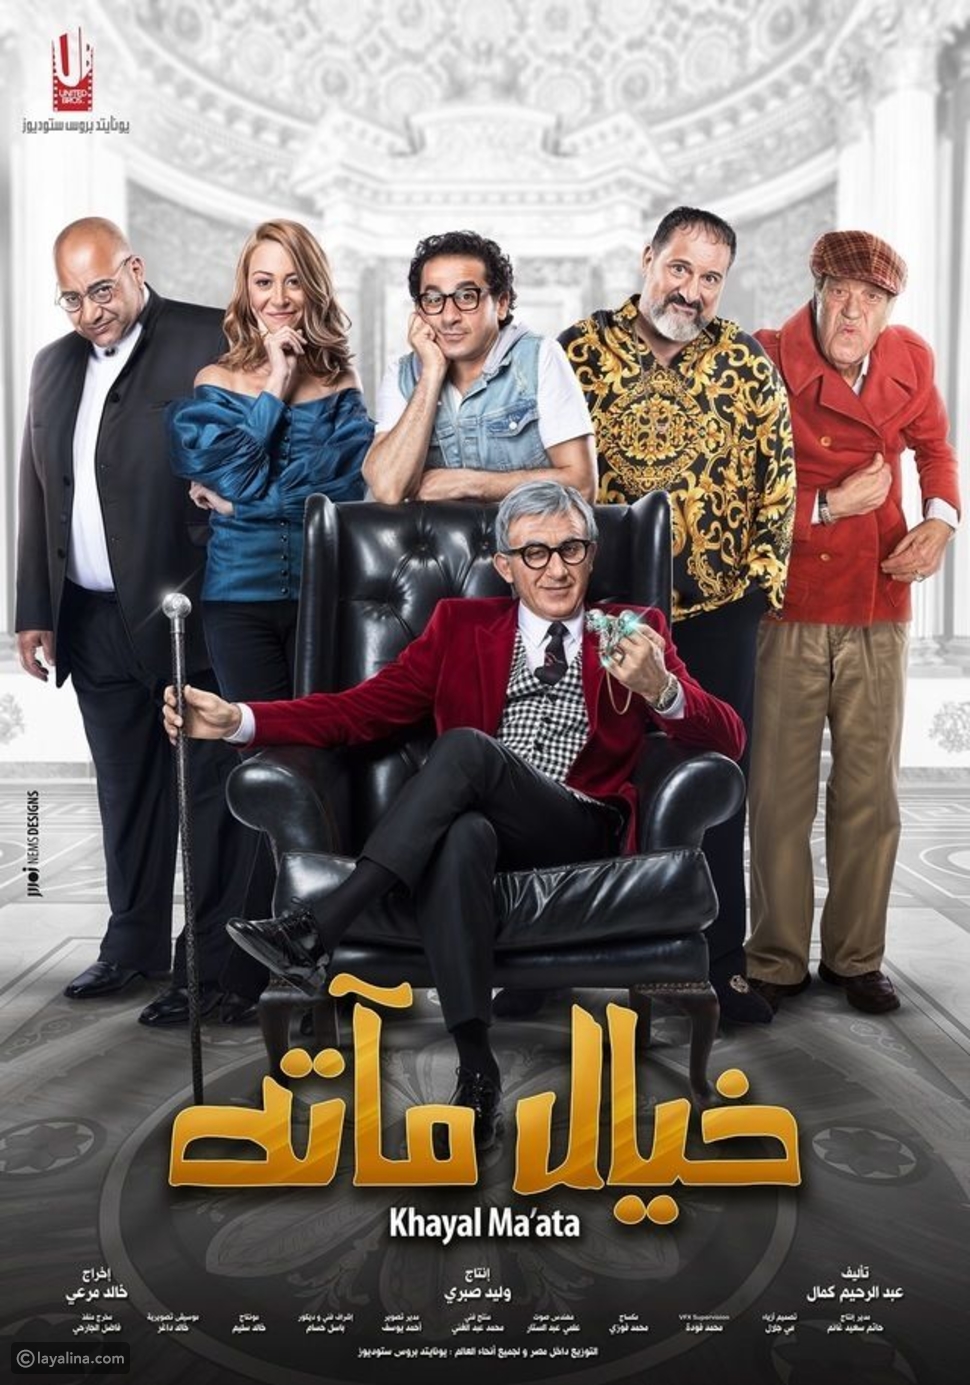 قائمة بأبرز الأفلام المصرية التي عُرضت في 2019 602ed45ea21dbc6ceabc4d4d828a976c32dfd56b-301219150241.jpg?preset=v3